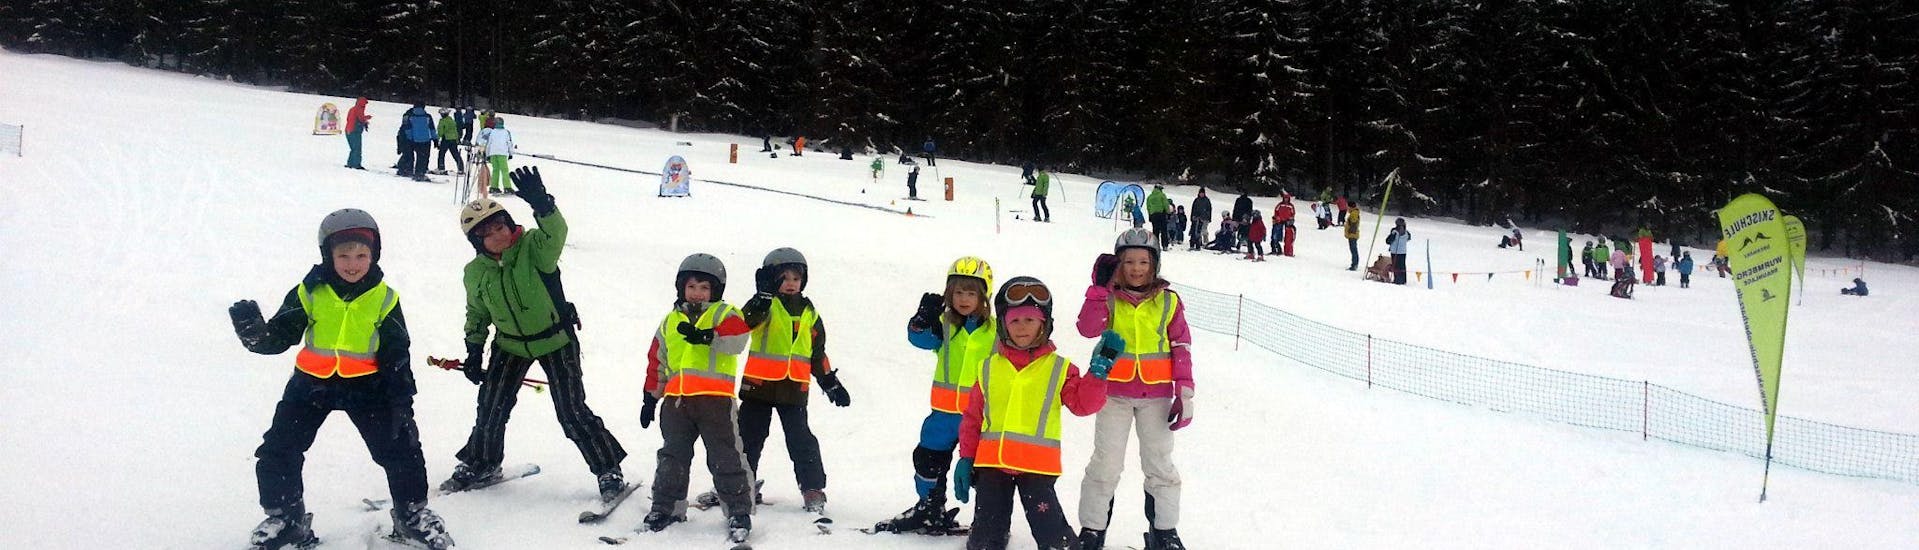 Skilessen voor Kinderen en Tieners (12-15 jaar) voor Beginners.